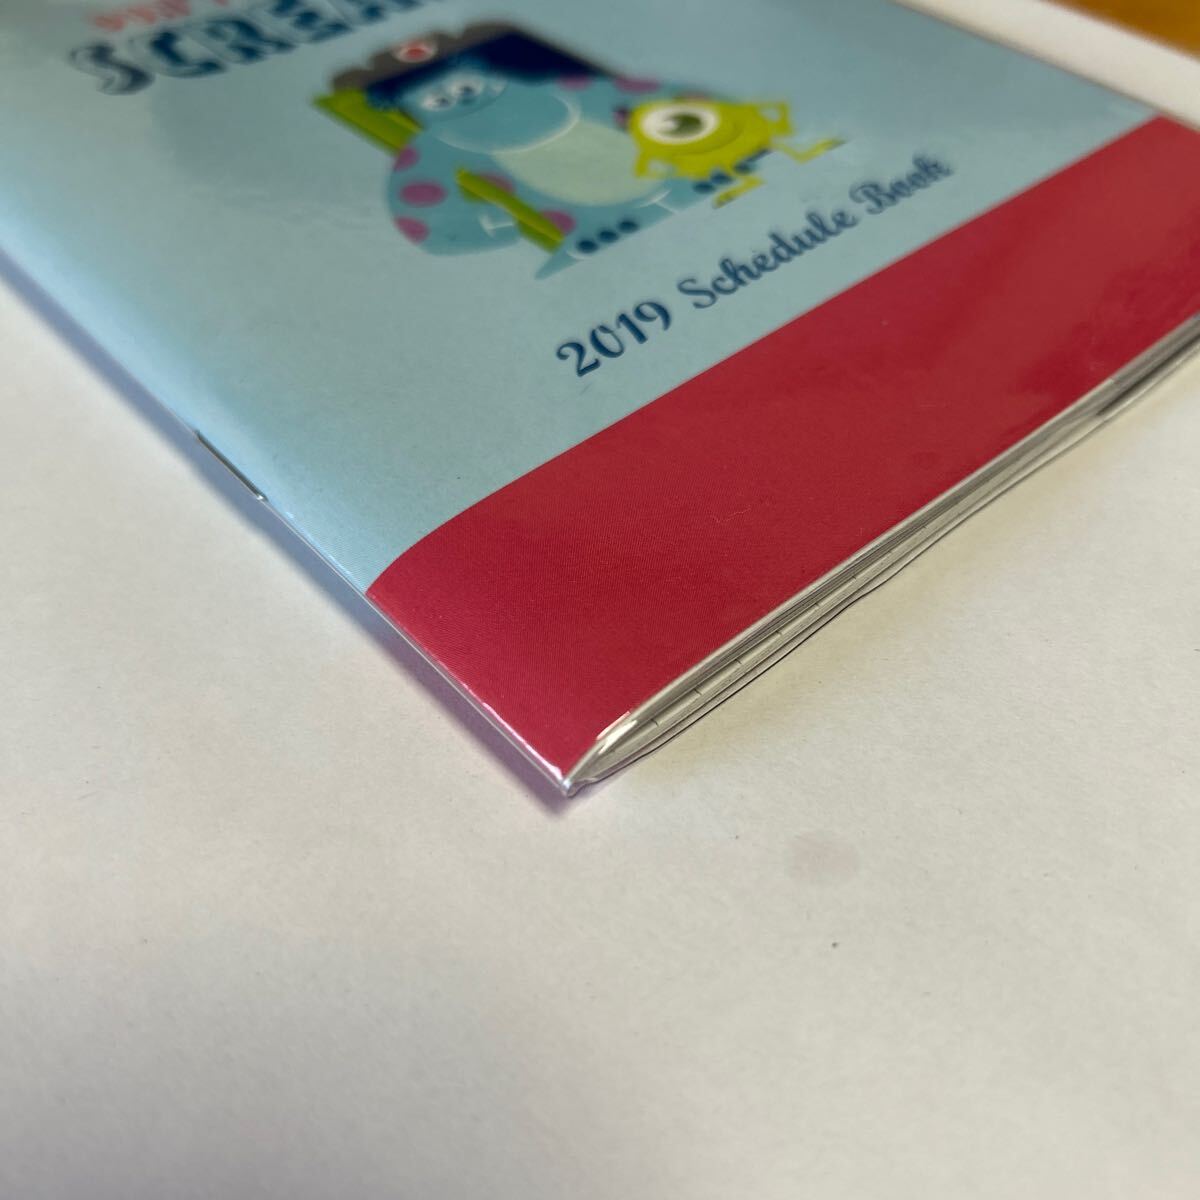 スケジュール帳 2019年 モンスターズインク 手帳 ディズニー ダイソー 未使用品 送料無料_画像3